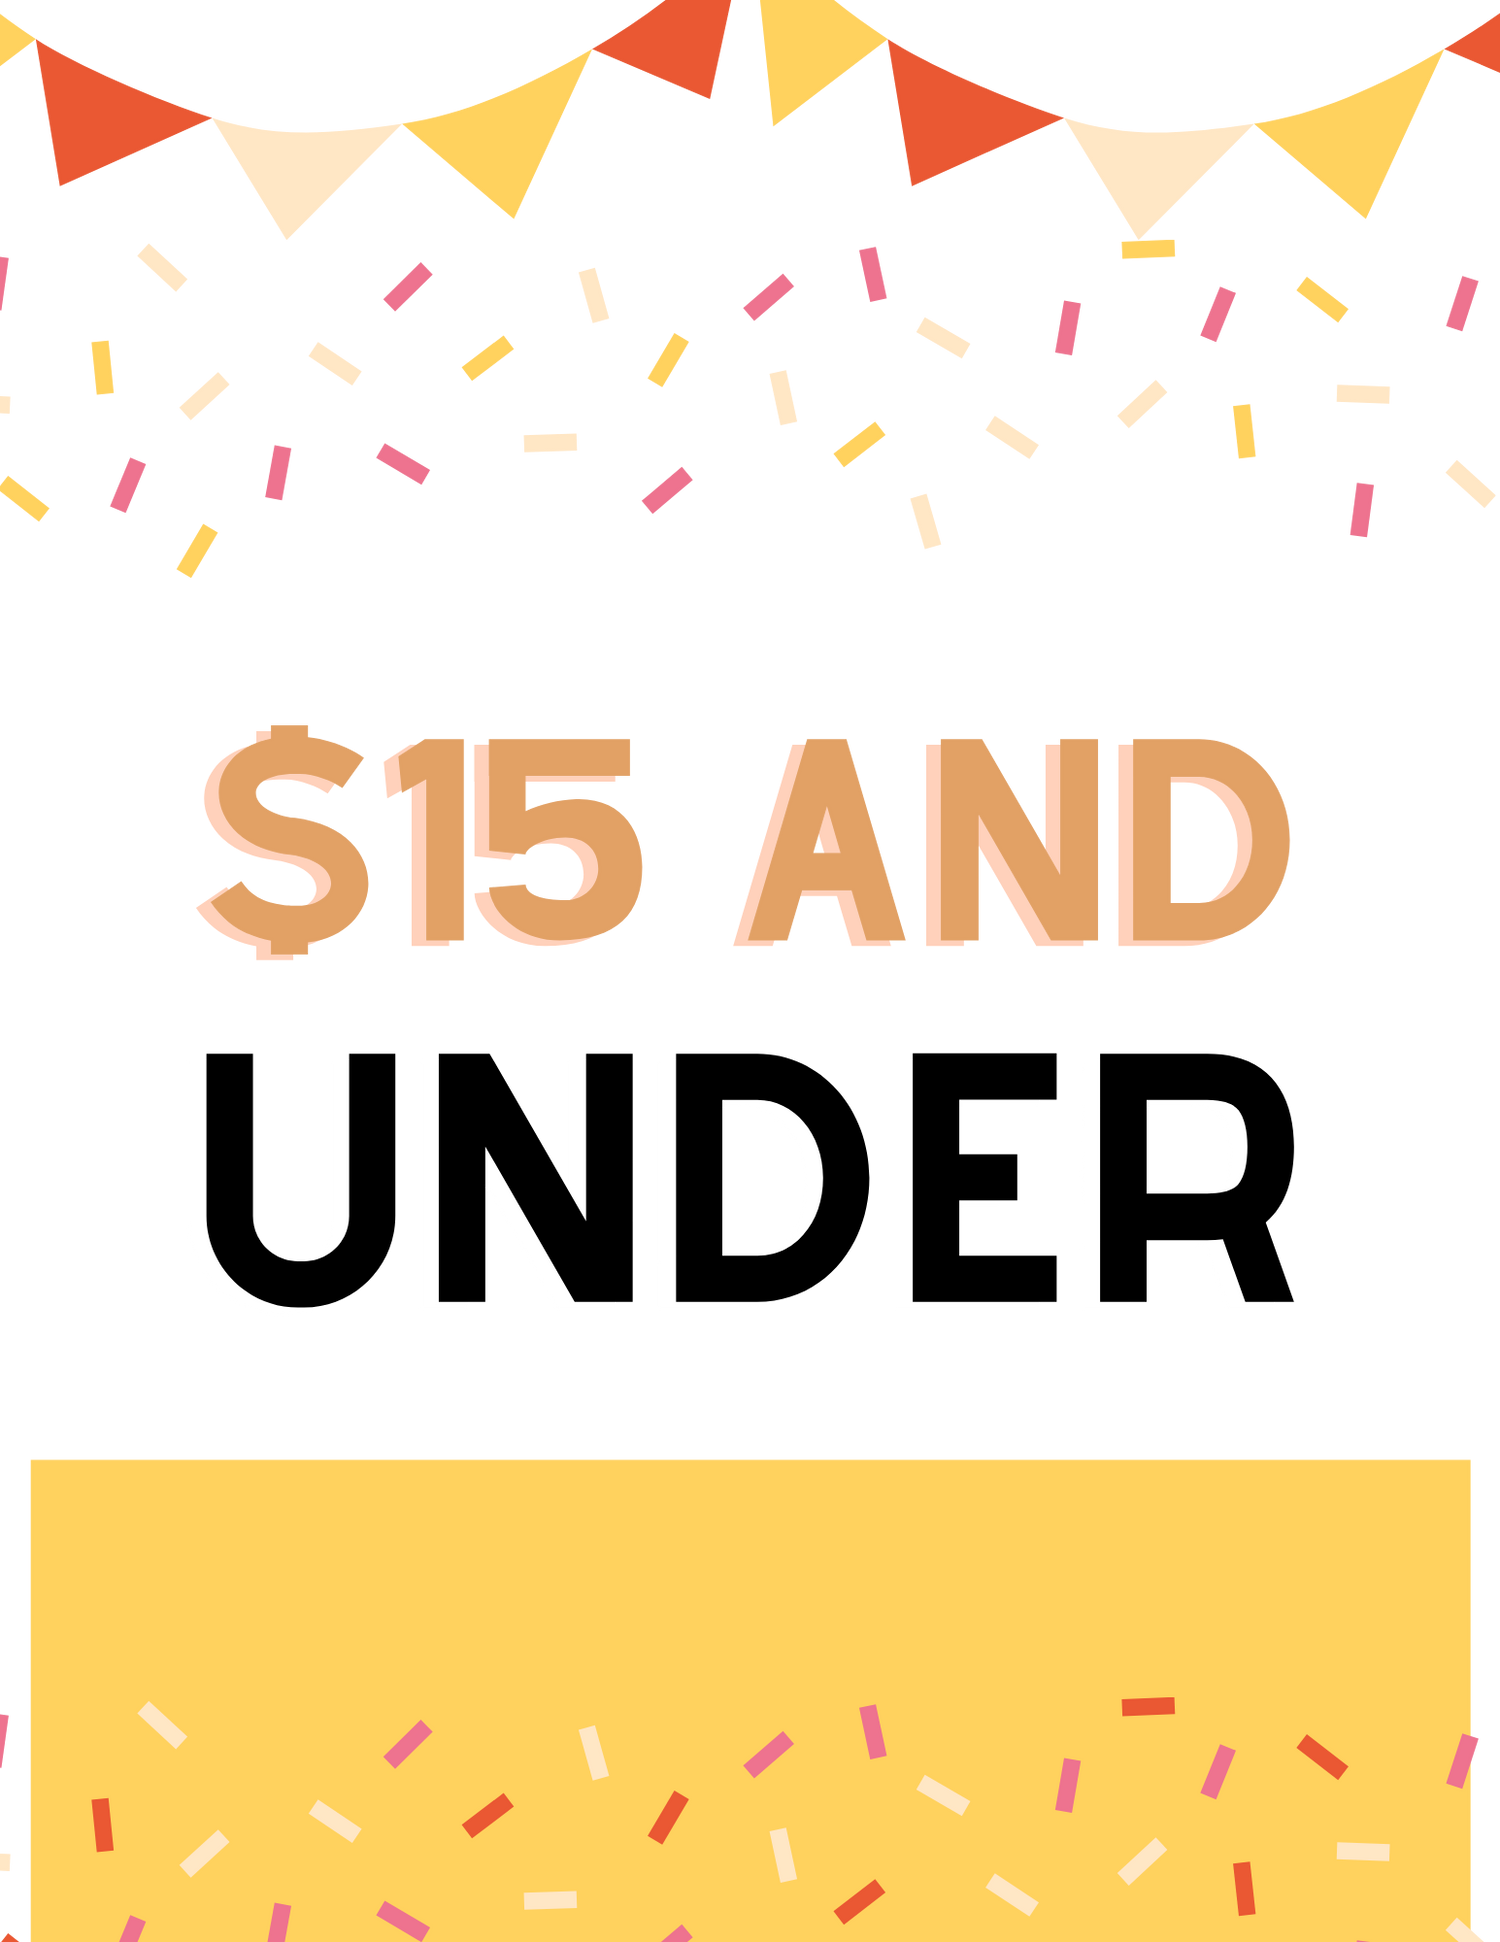 Under $15